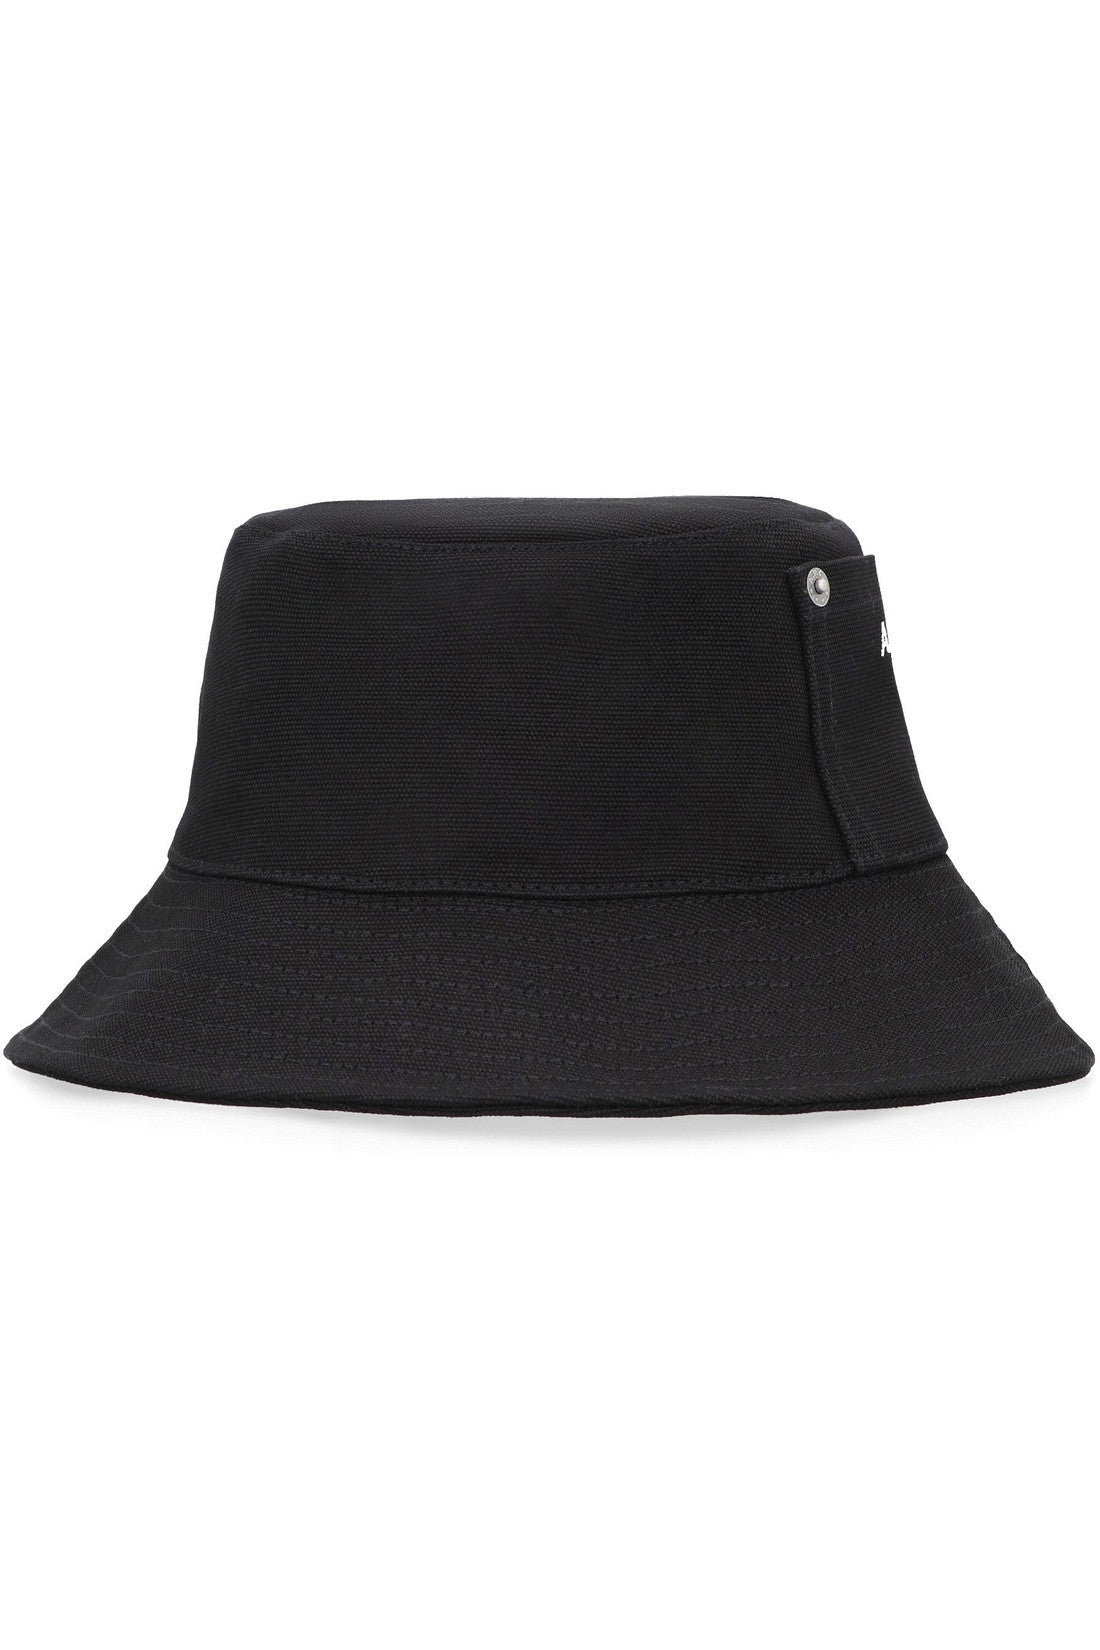 A.P.C.-OUTLET-SALE-Bucket hat-ARCHIVIST